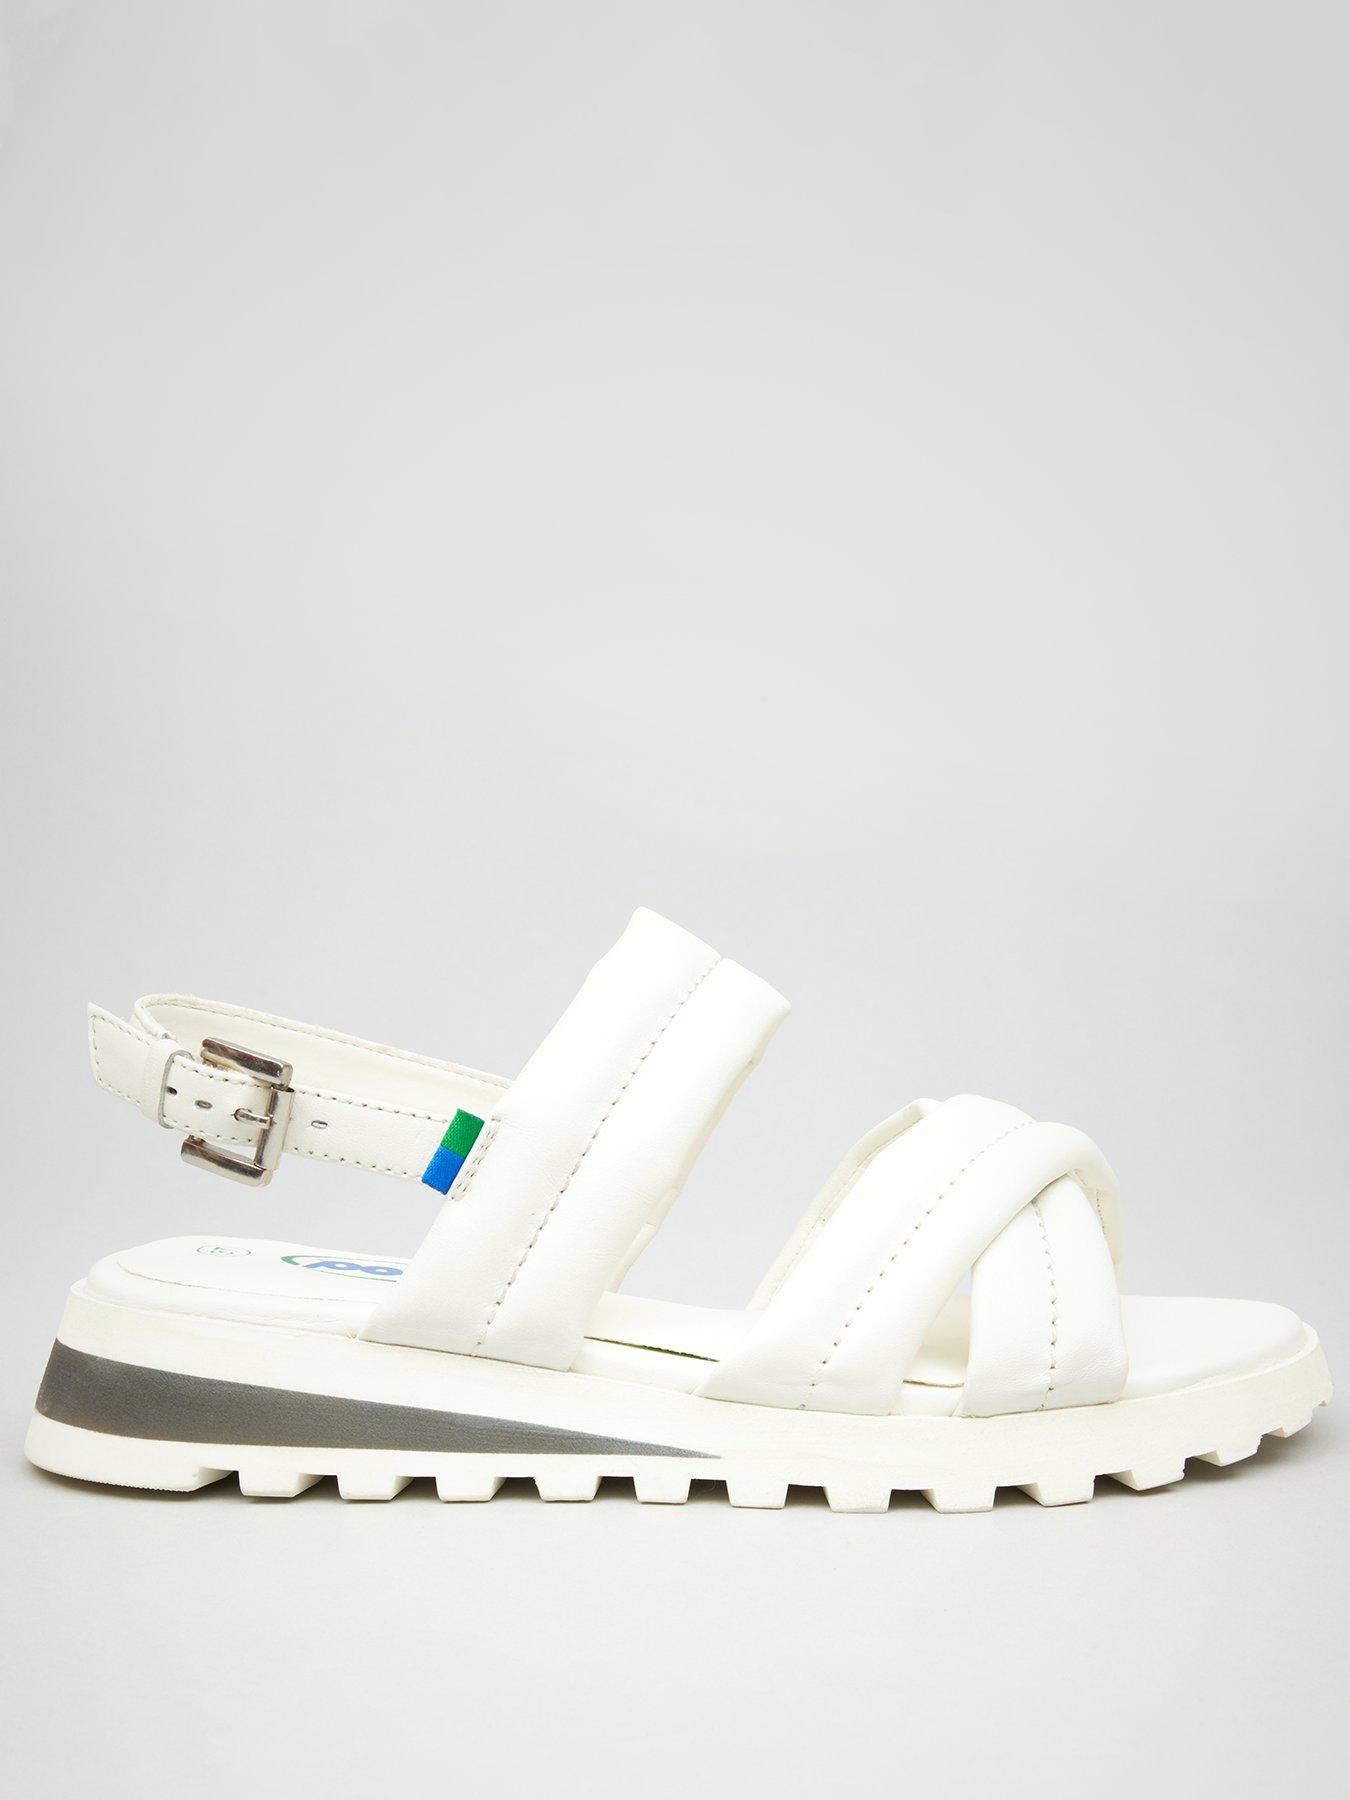 Louis Vuitton Rubber Lasercut Accents Slides - White Sandals